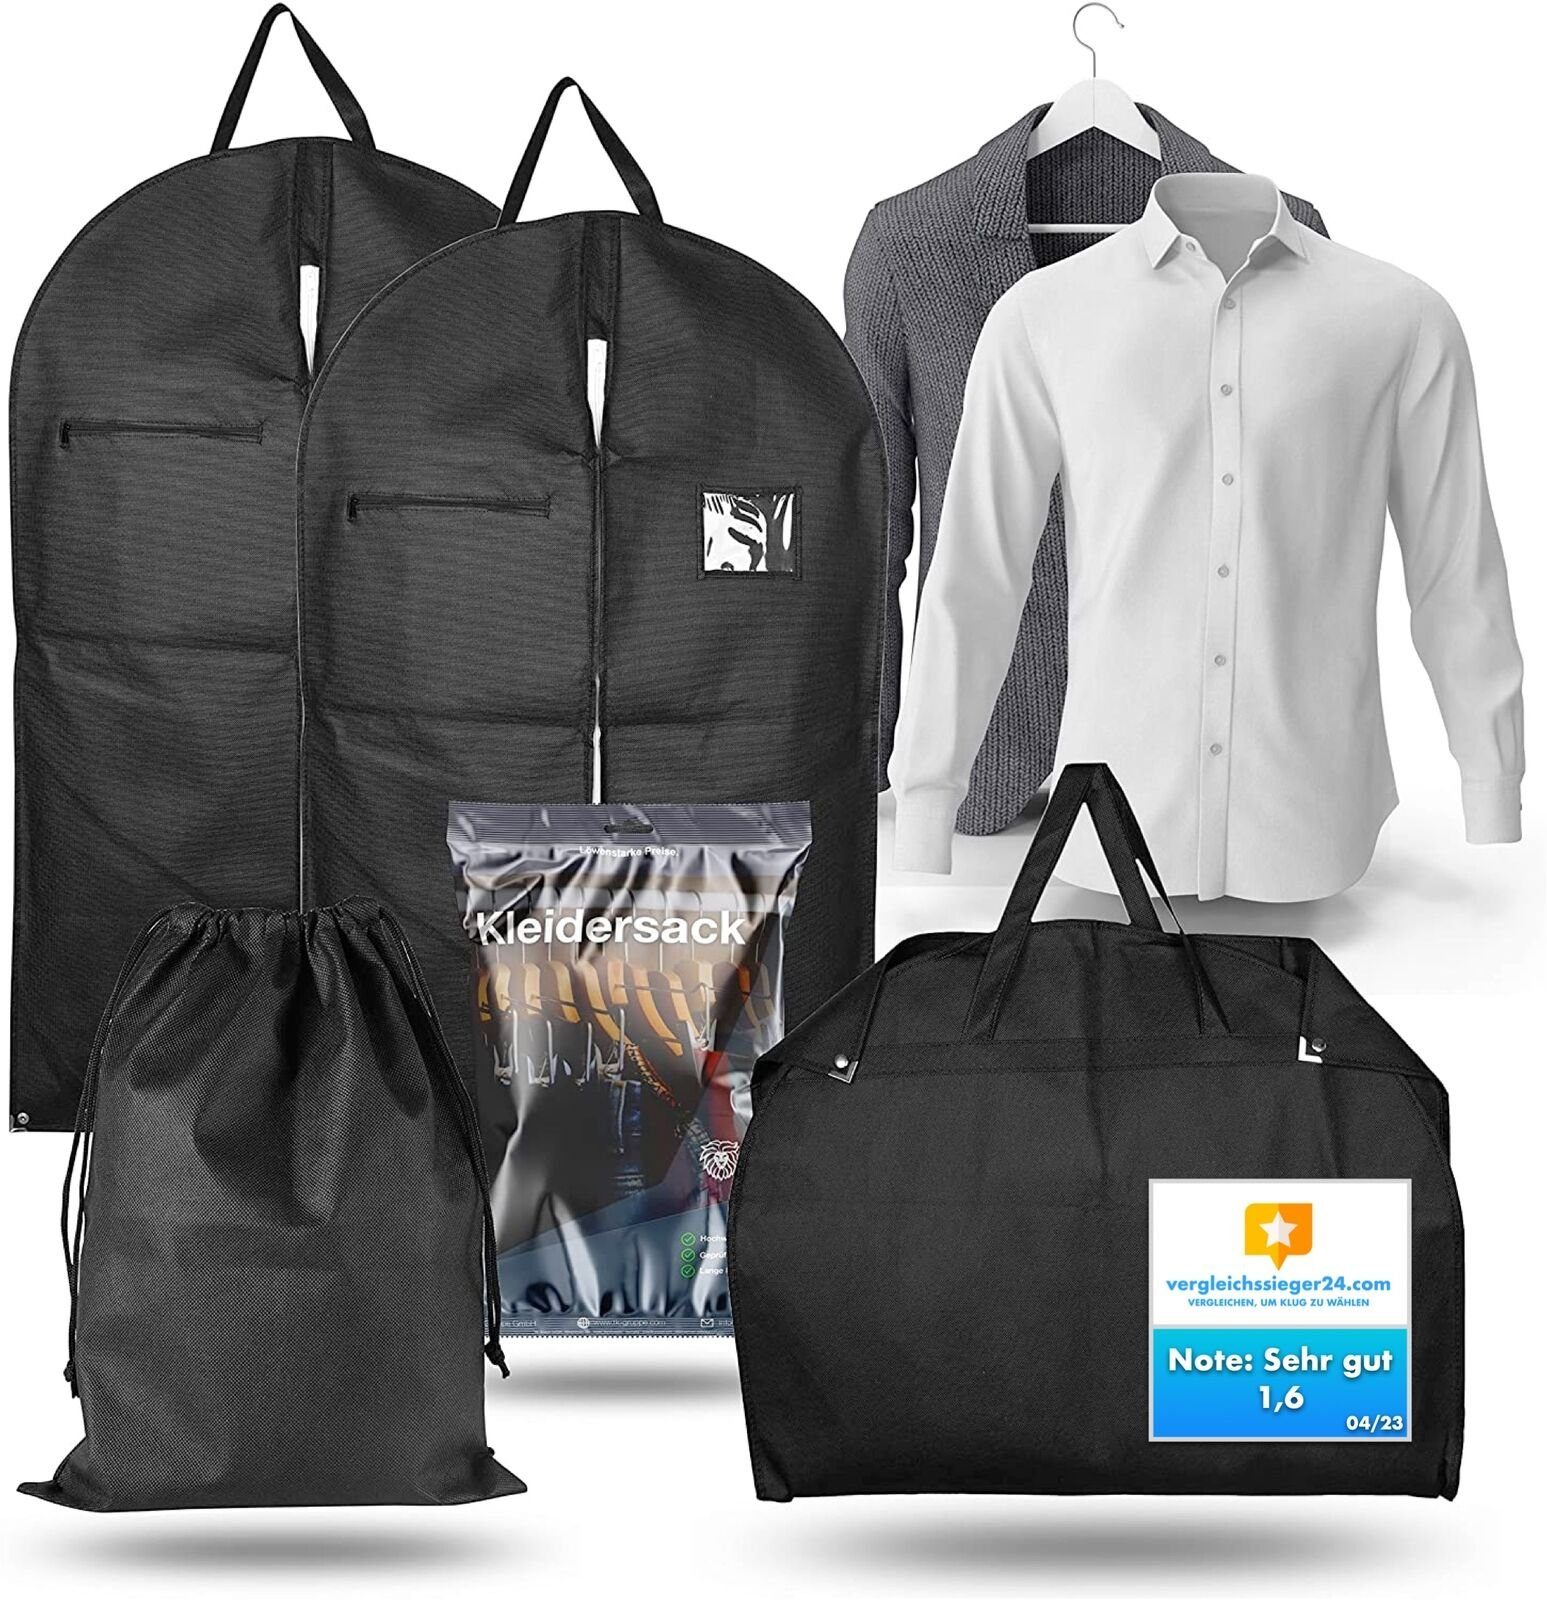 Travelfreund® Kleiderschutzhülle Kleidersack Set - 2x Kleiderhüllen inkl. 1x Wäschesack (3 St)